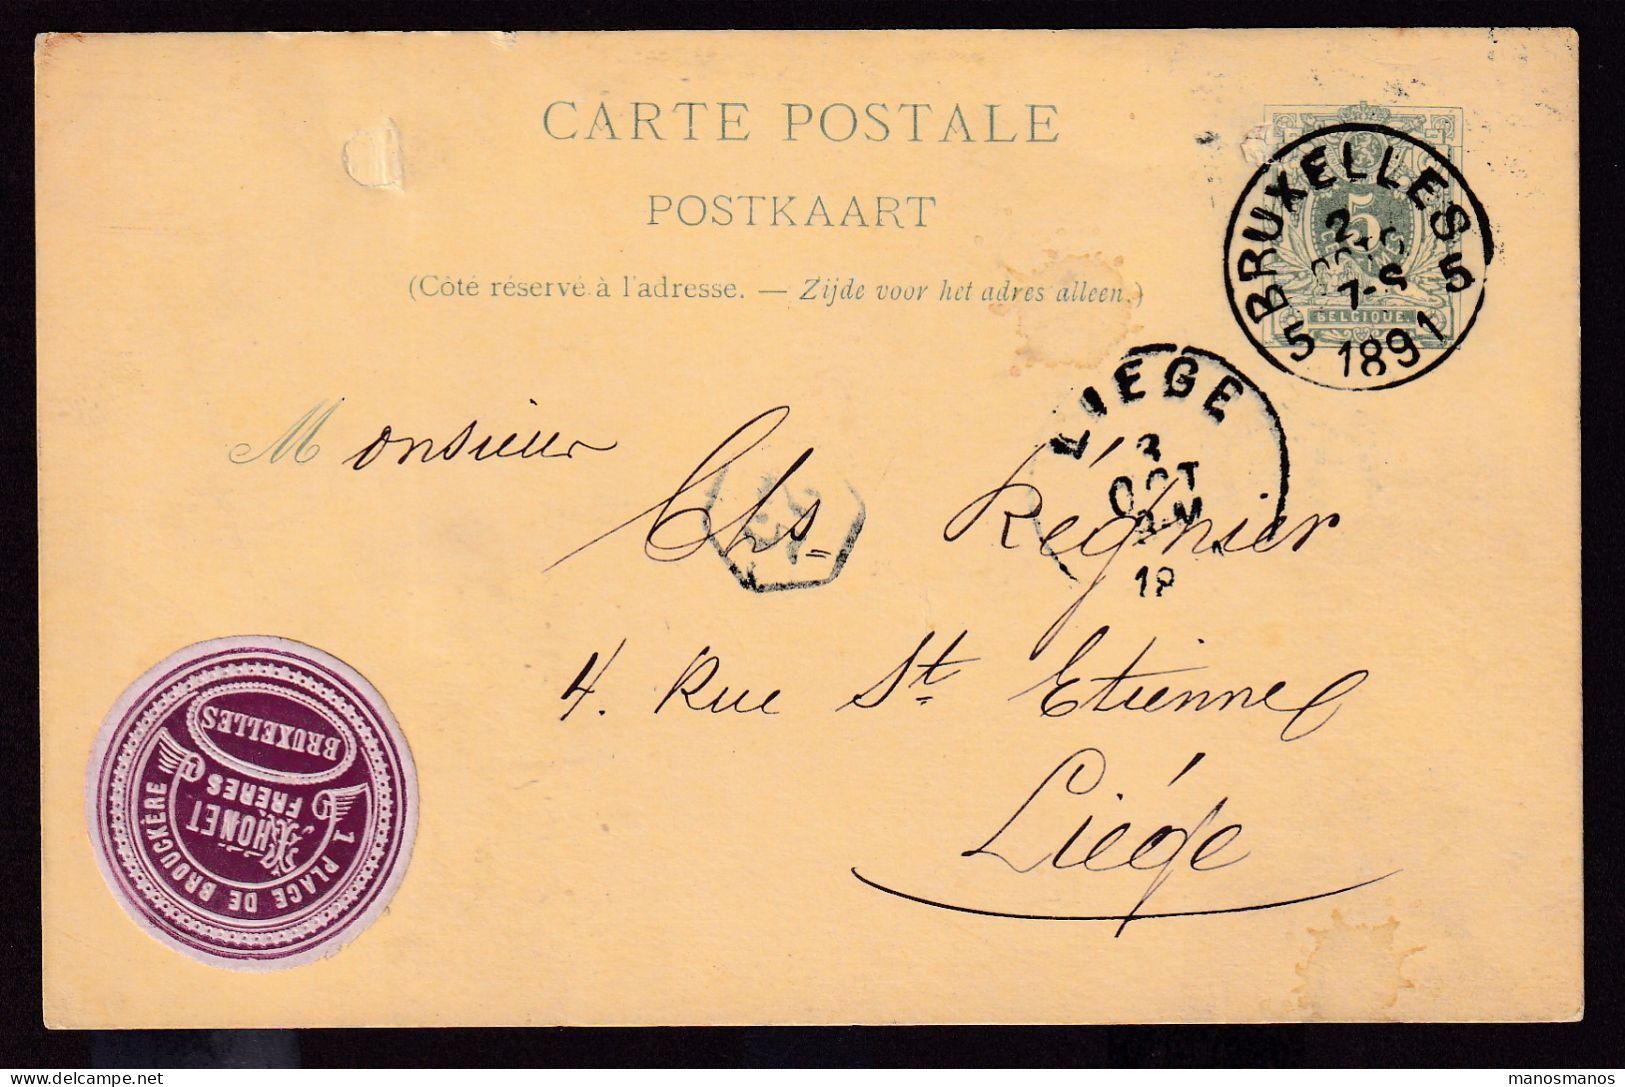 DDFF 542 - VIGNETTE (Fabricant De Meubles § Chaises) THONET Frères Sur Entier Lion Couché BRUXELLES 1891- - Postcards 1871-1909